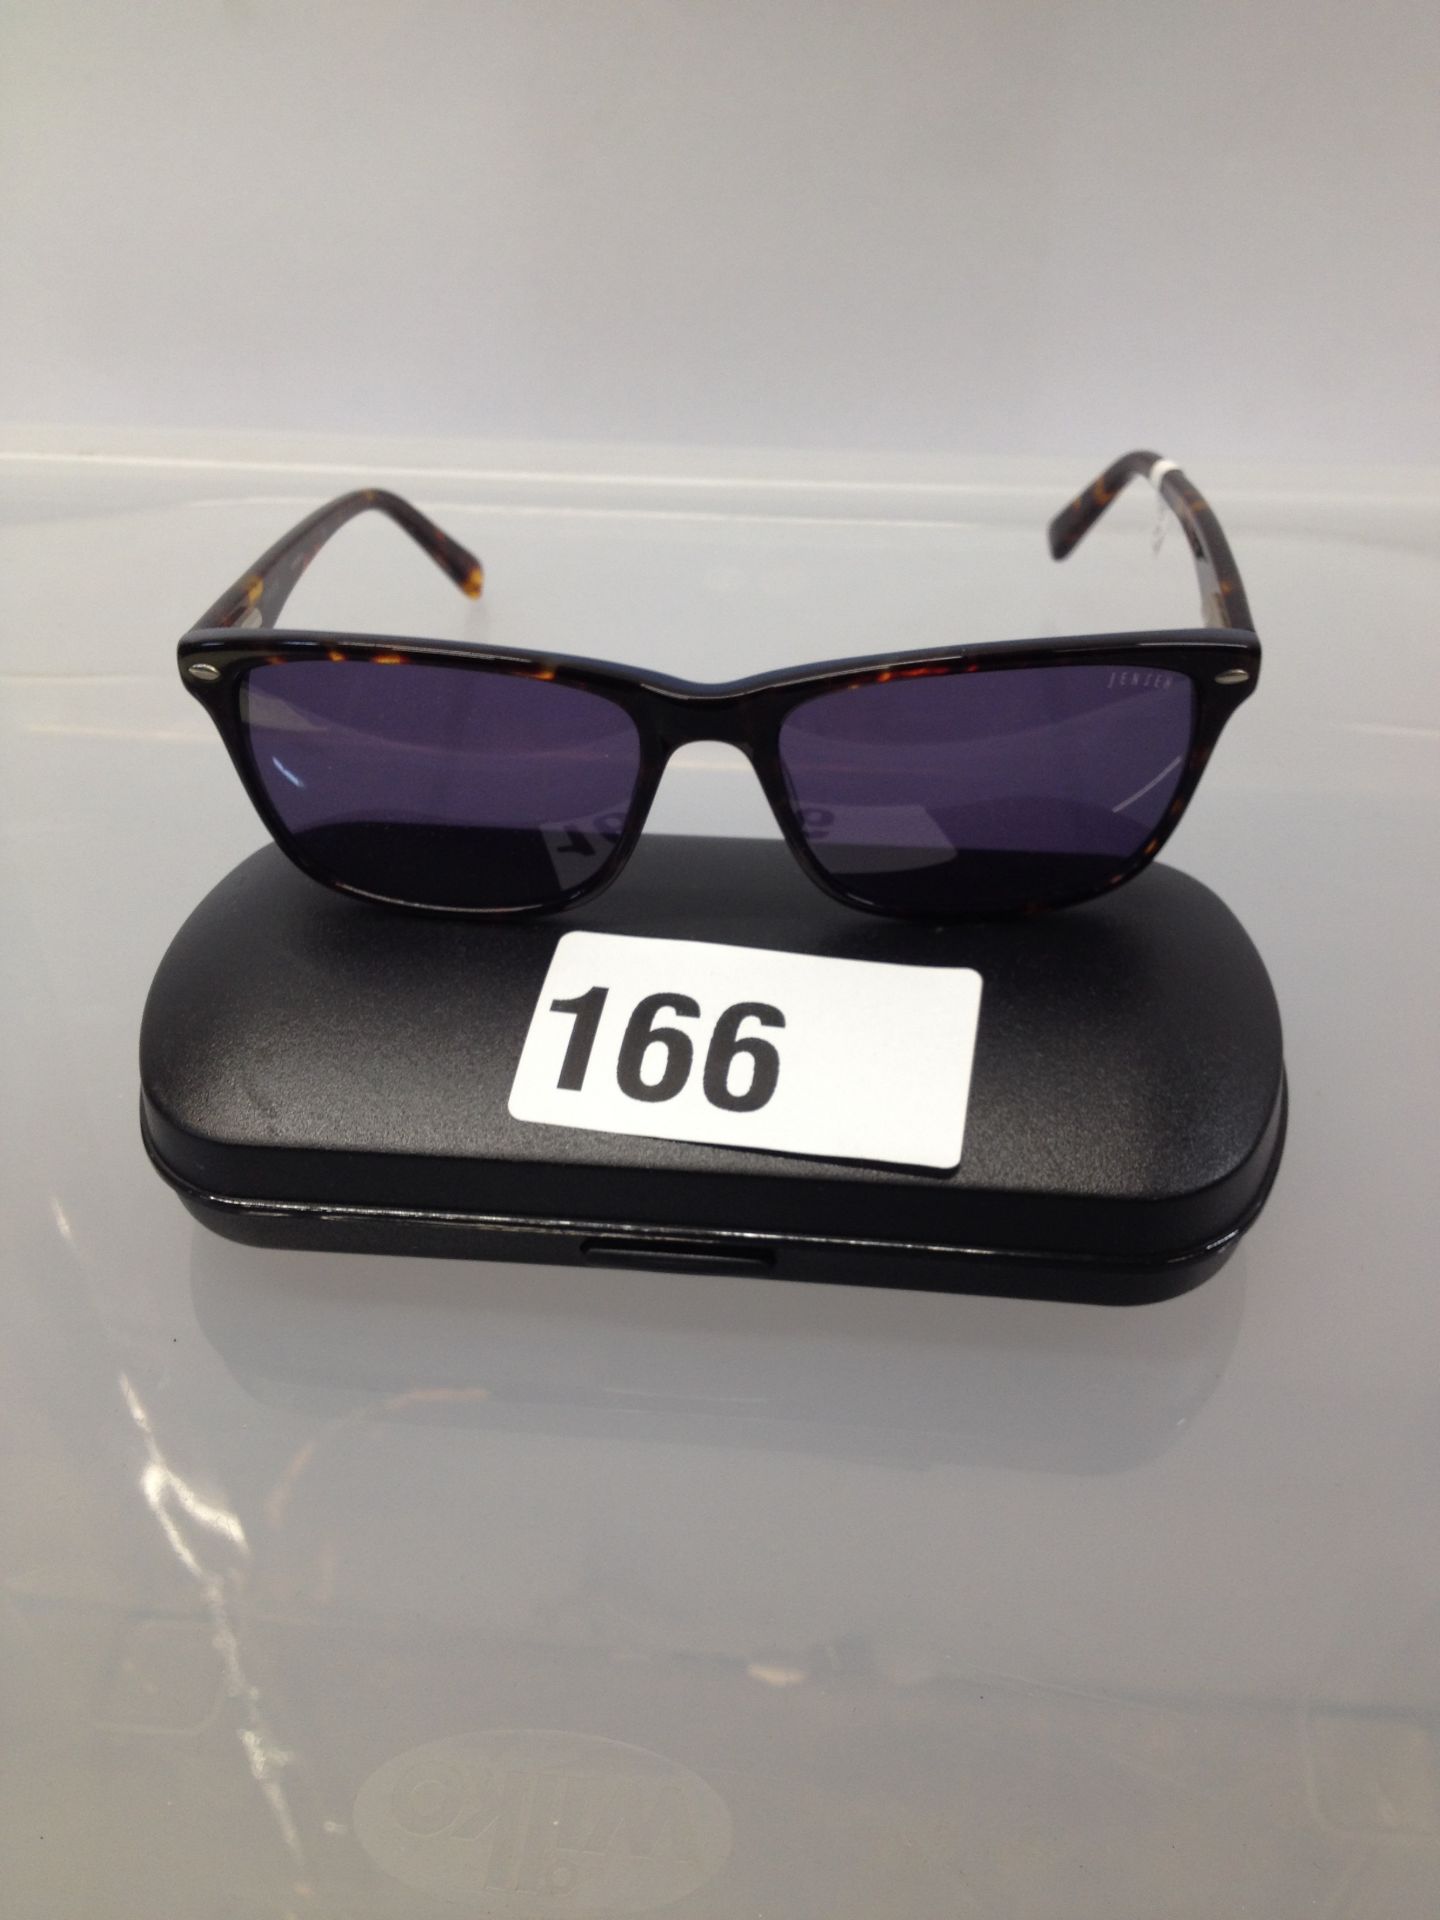 1 x Jensen Sunglasses